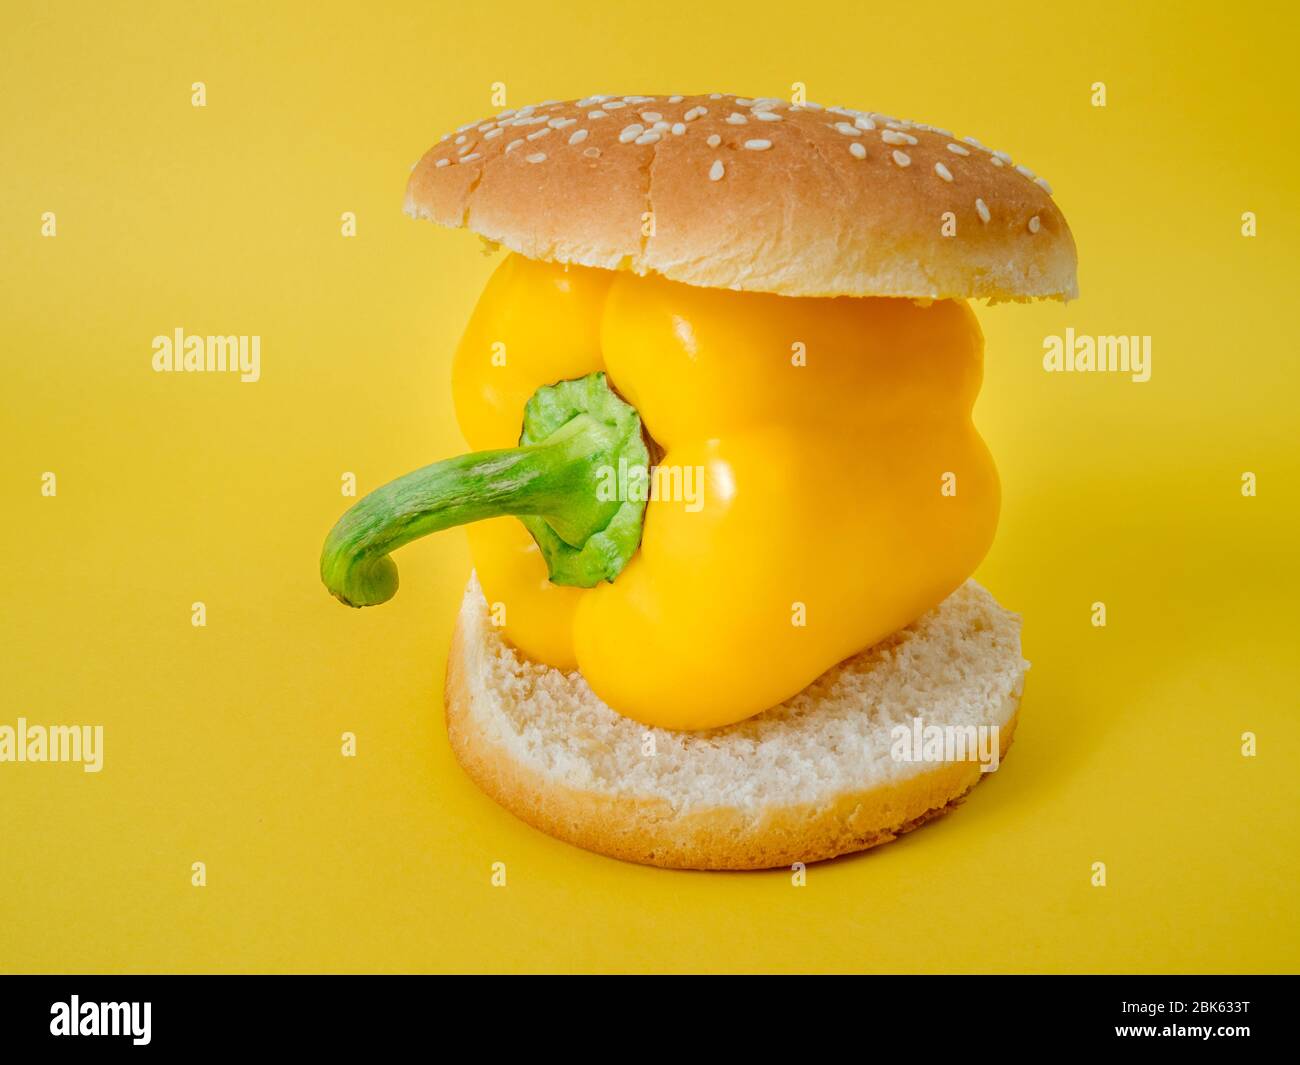 Hamburger avec paprika ou poivre frais. Concept de hamburger végétarien. Concept de nourriture végétale saine. Hamburger avec paprika ou poivre frais. Banque D'Images